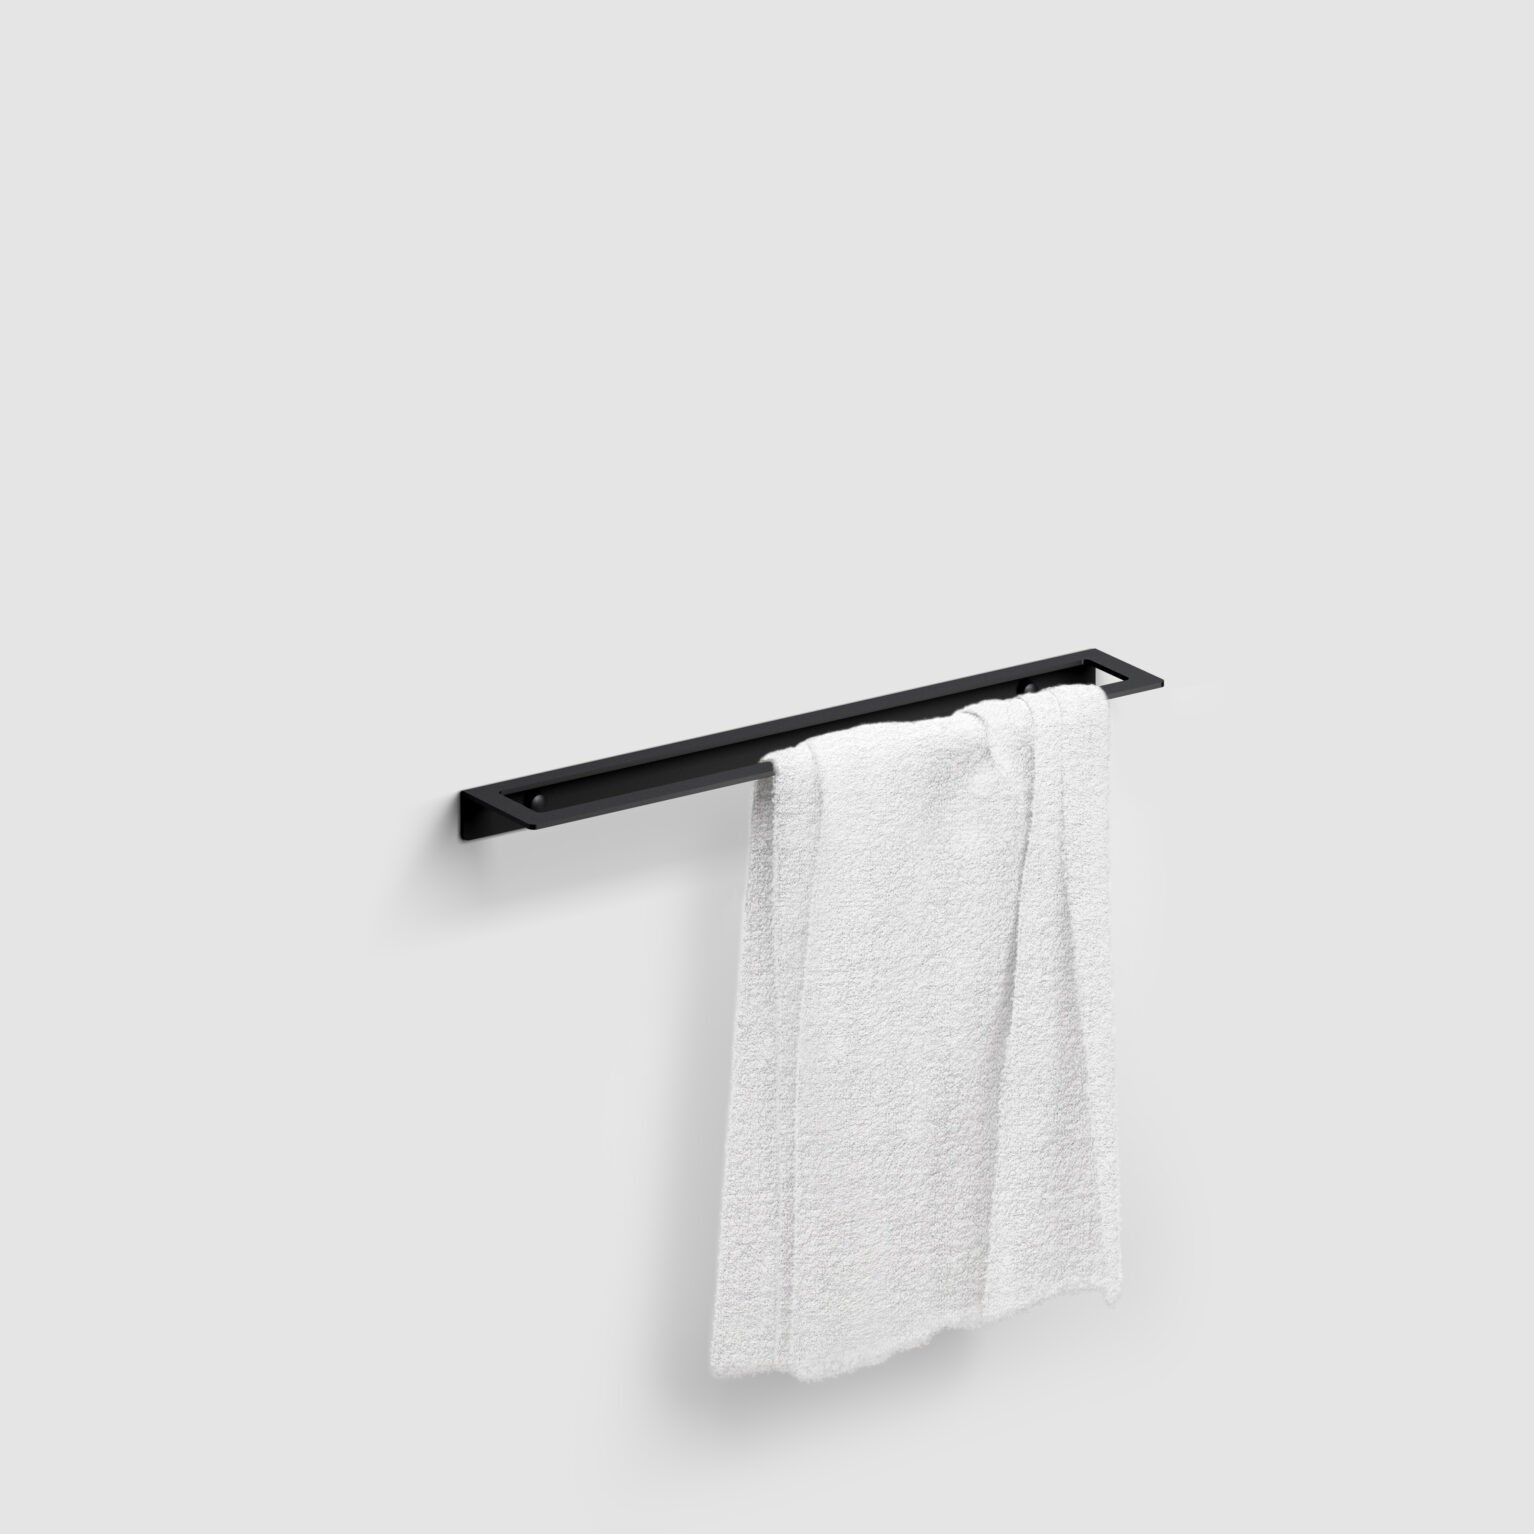 handdoek-rek-45-cm-mat-zwart-toilet-badkamer-luxe-sanitair-Fold-clou-CL090405121